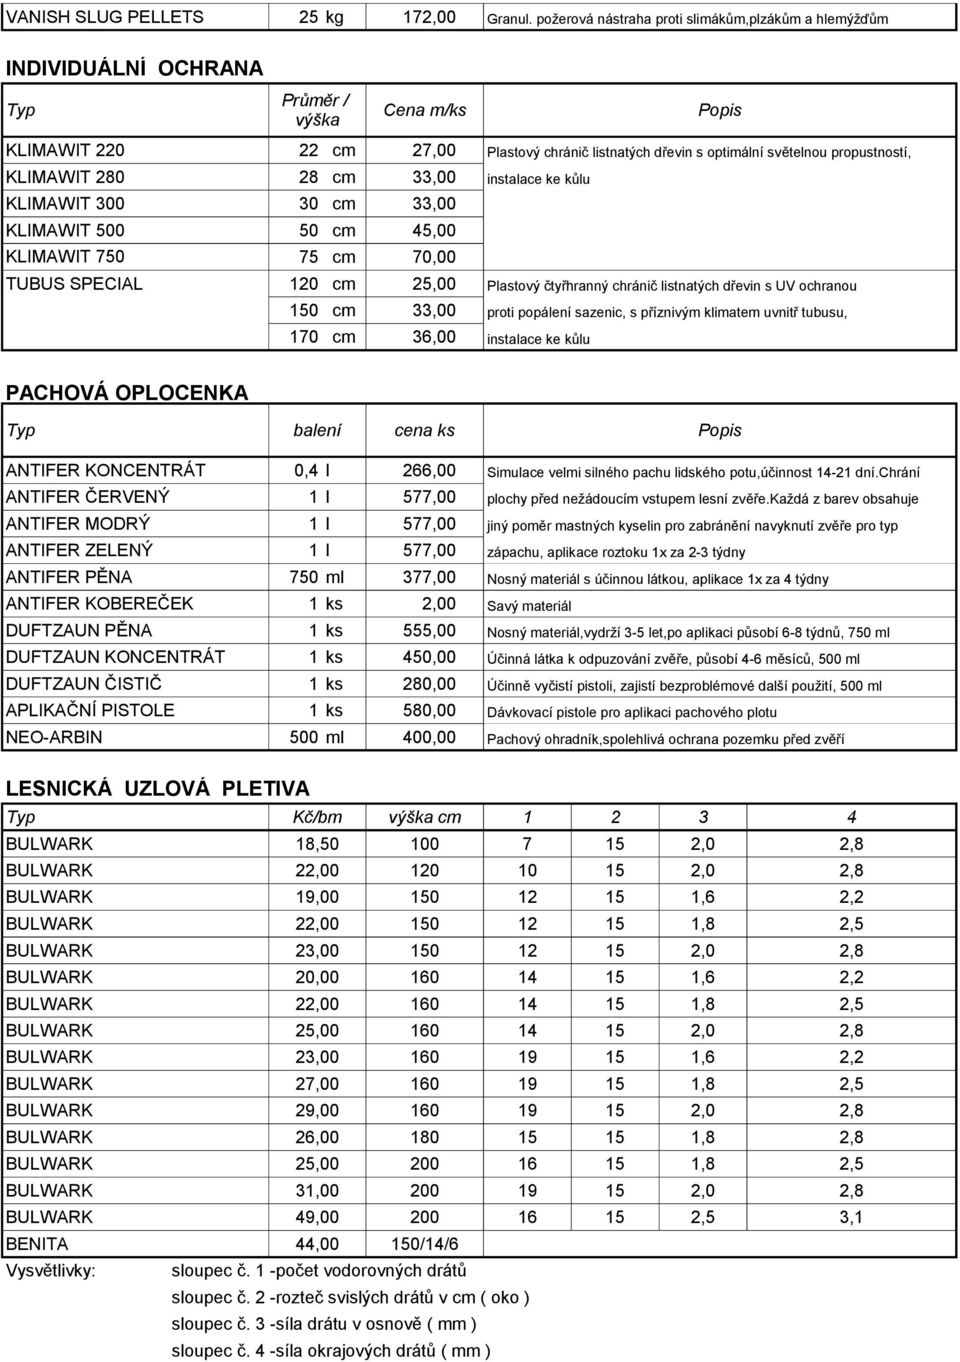 REPELENTY FUNGICIDY. Přípravek balení cena l/kg Popis - PDF Stažení zdarma